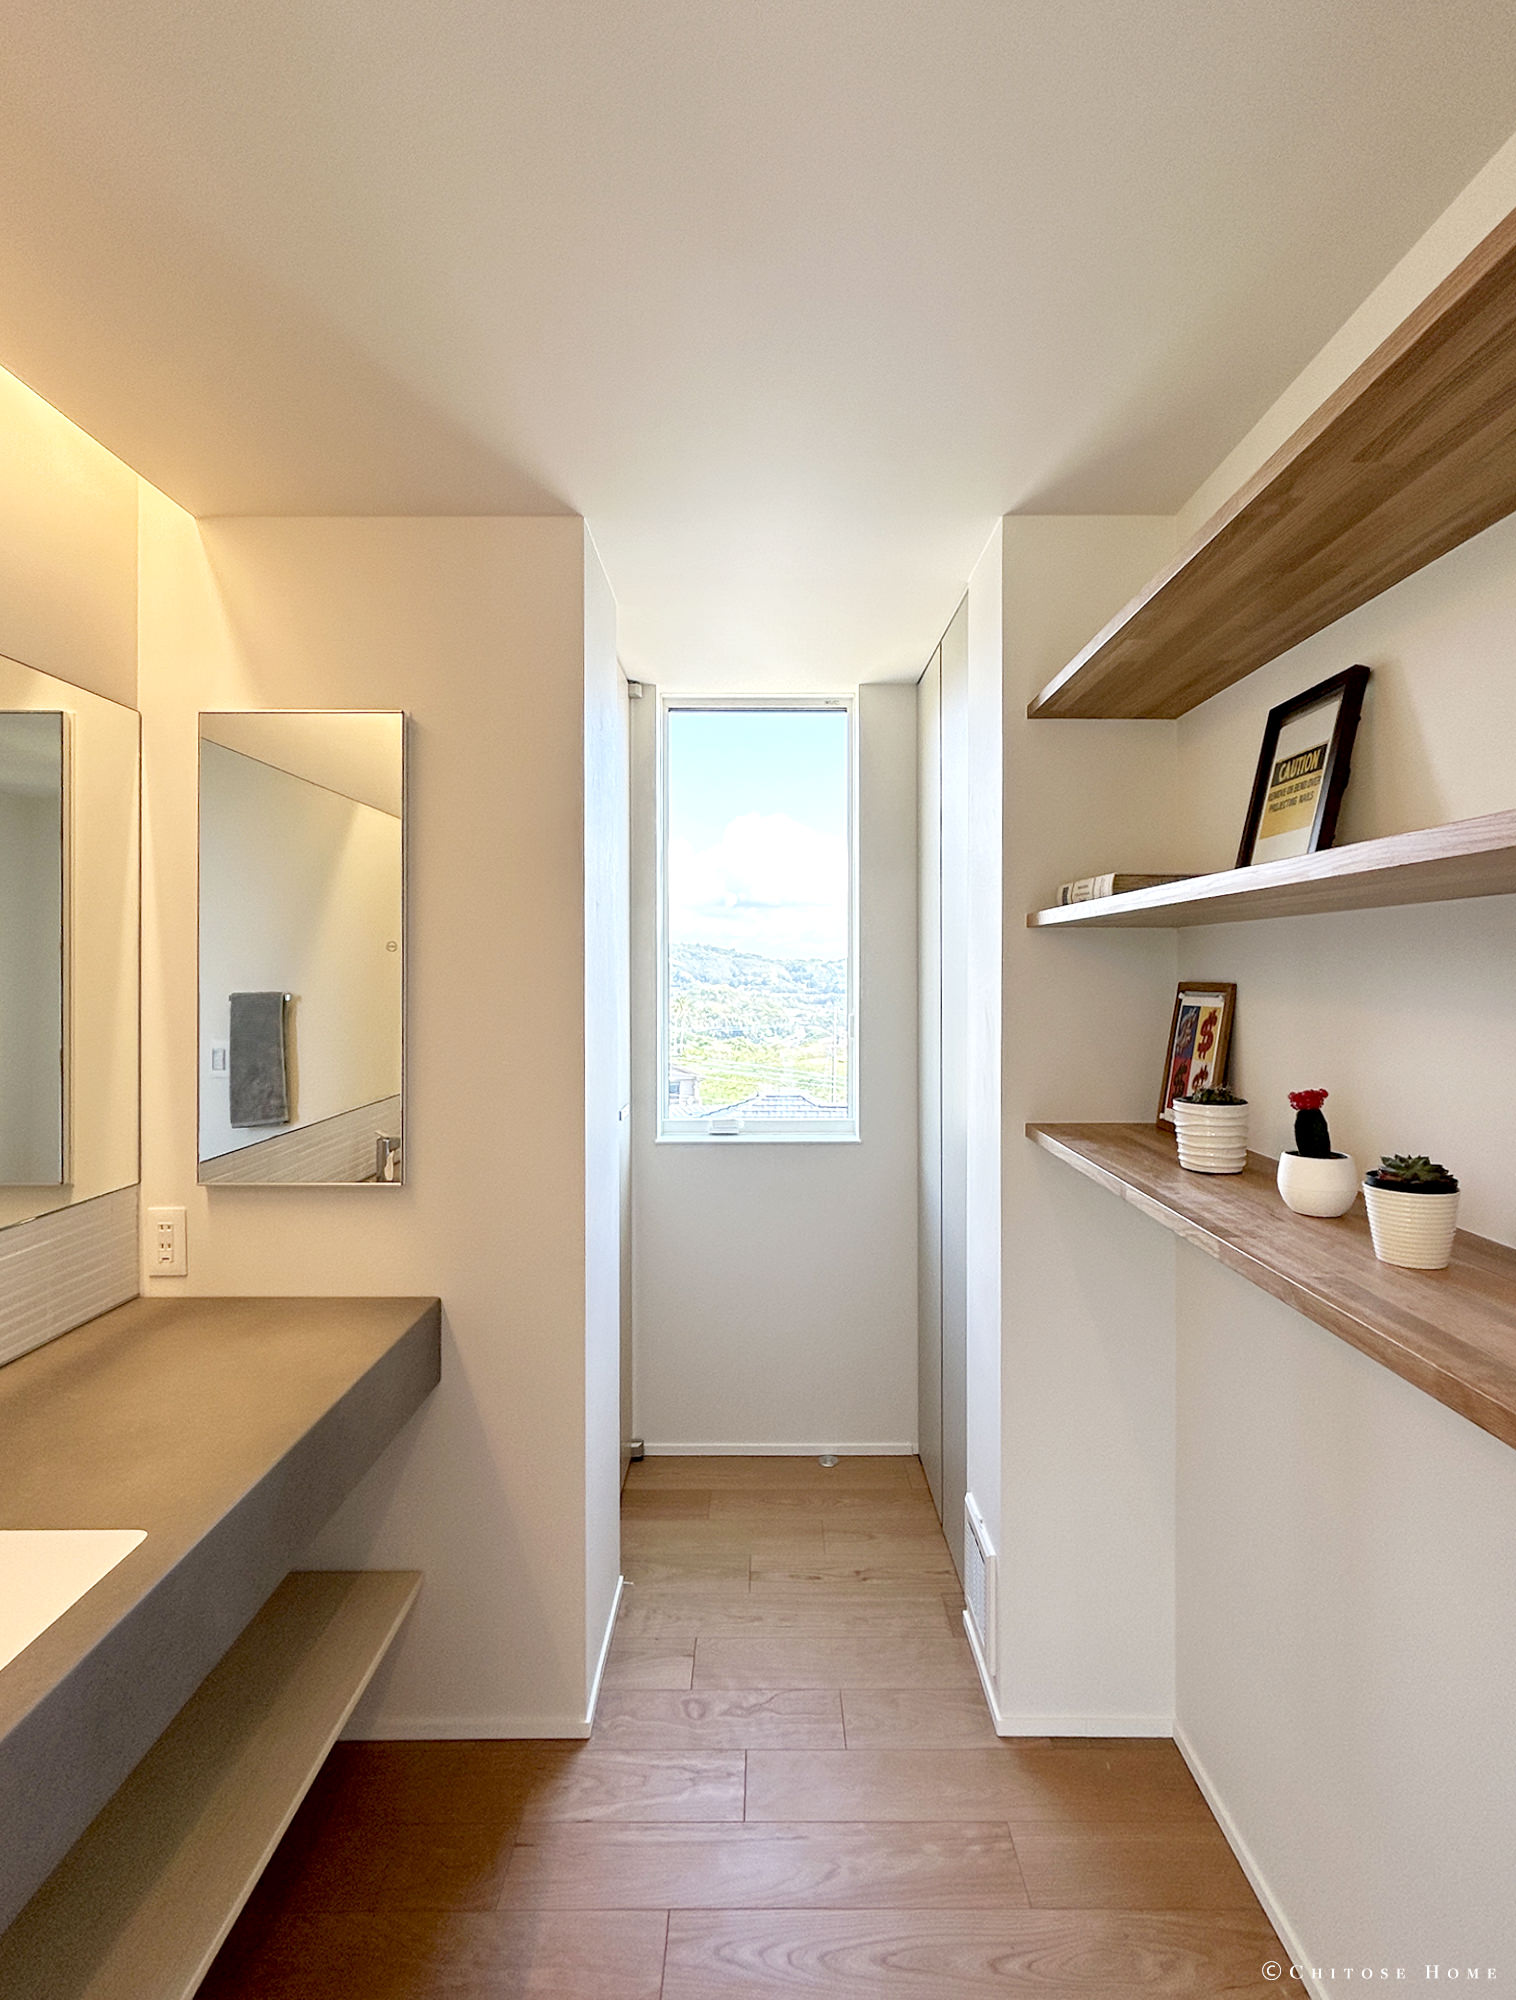 洗面スペースからトイレへと繋がる動線にある廊下。突き当りの壁に天井と高さを合わせた窓を設え、抜け感を演出。無垢材を使ったシンプルな構成の棚や間接照明、壁埋め込みの鏡付き収納など、使いやすさとデザインの両立を図る。